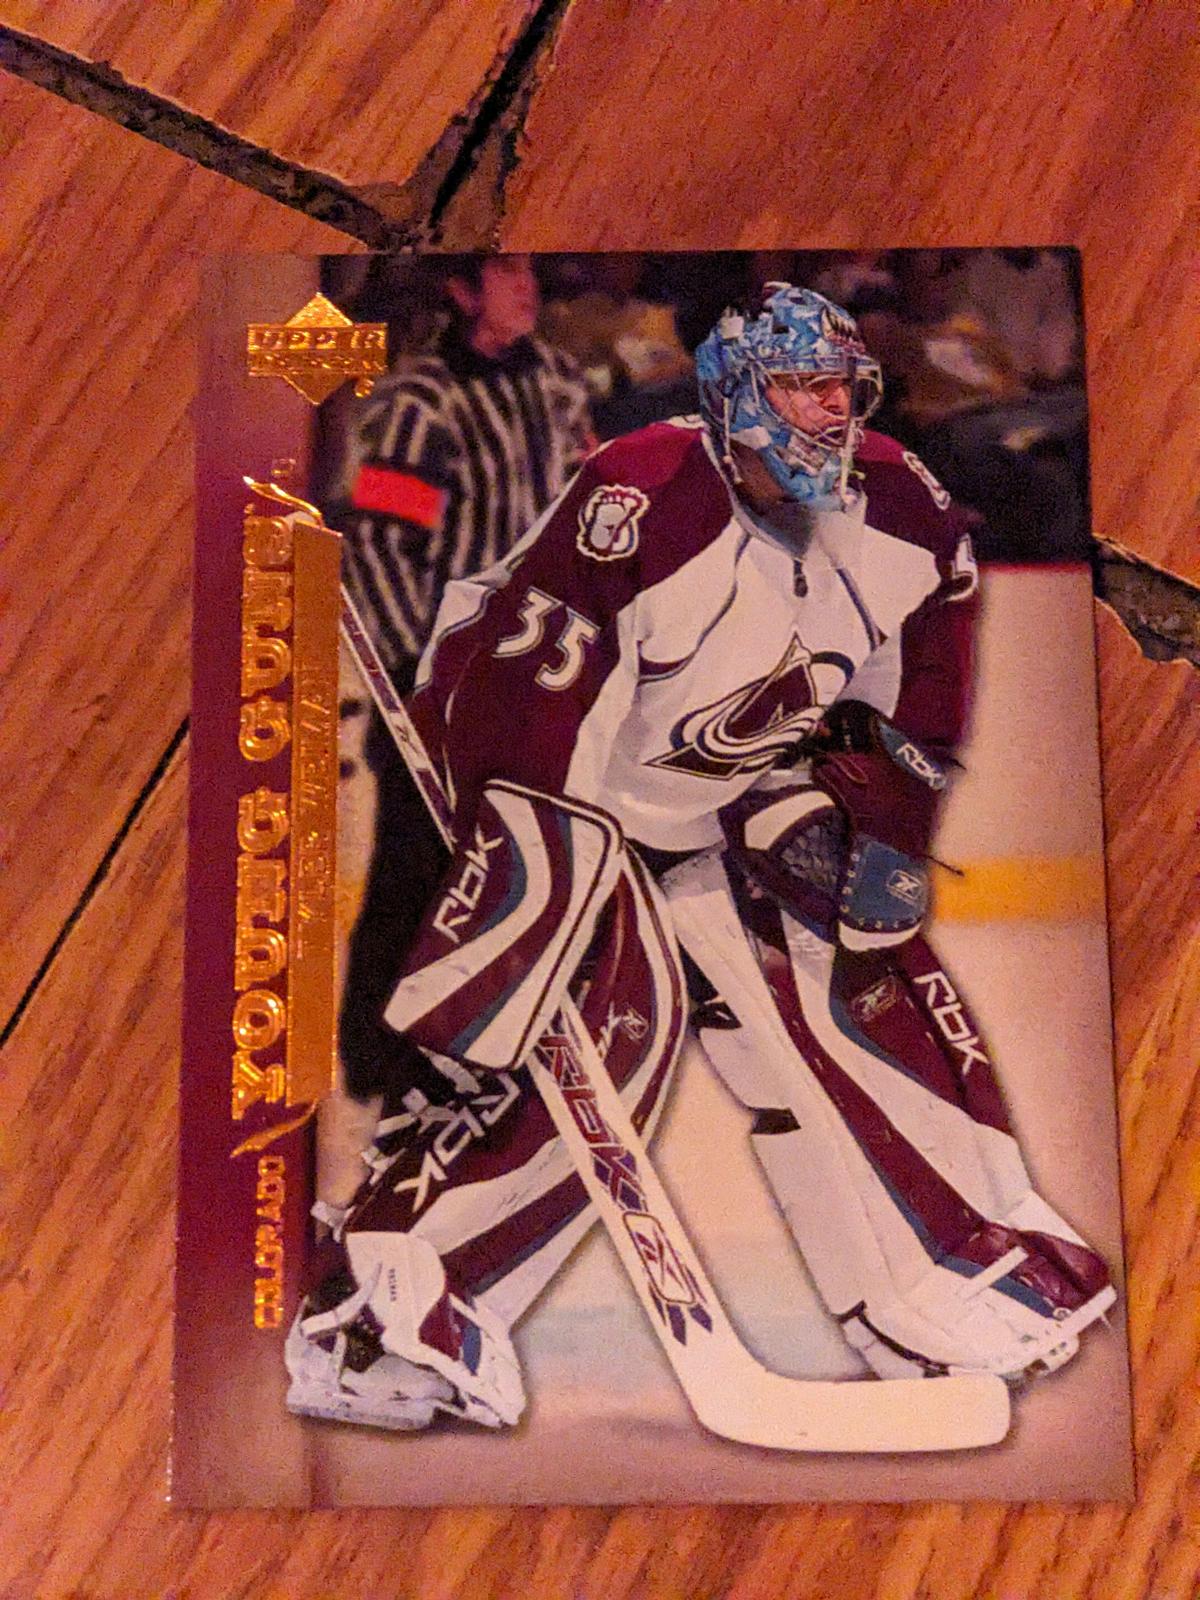 2007 - 2008 TYLER WEIMAN UPPER DECK YOUNG GUNS ROOKIE NHL HOCKEY CARD SERIES 1